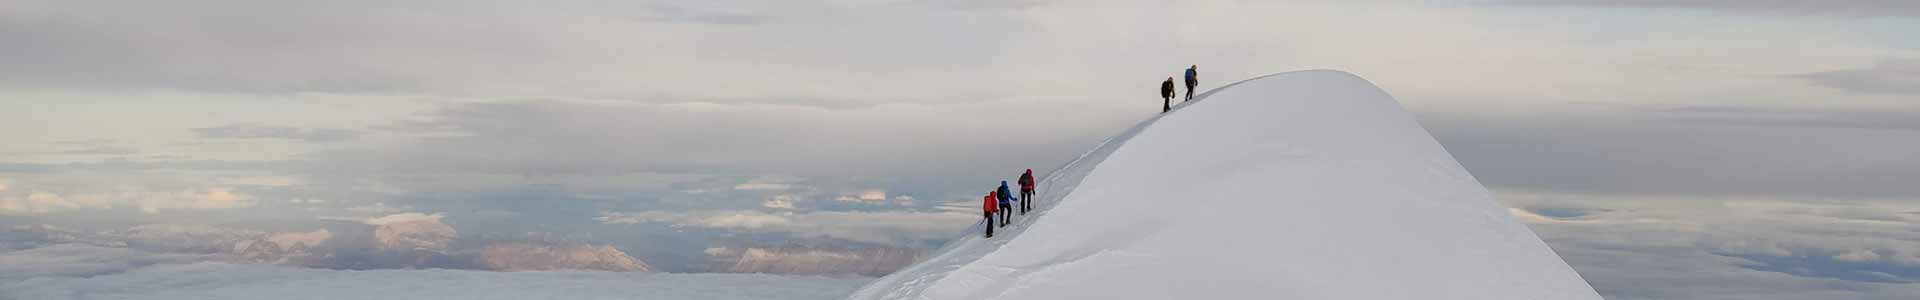 5 alpinistas llegando a la parte alta nevada de una montaña